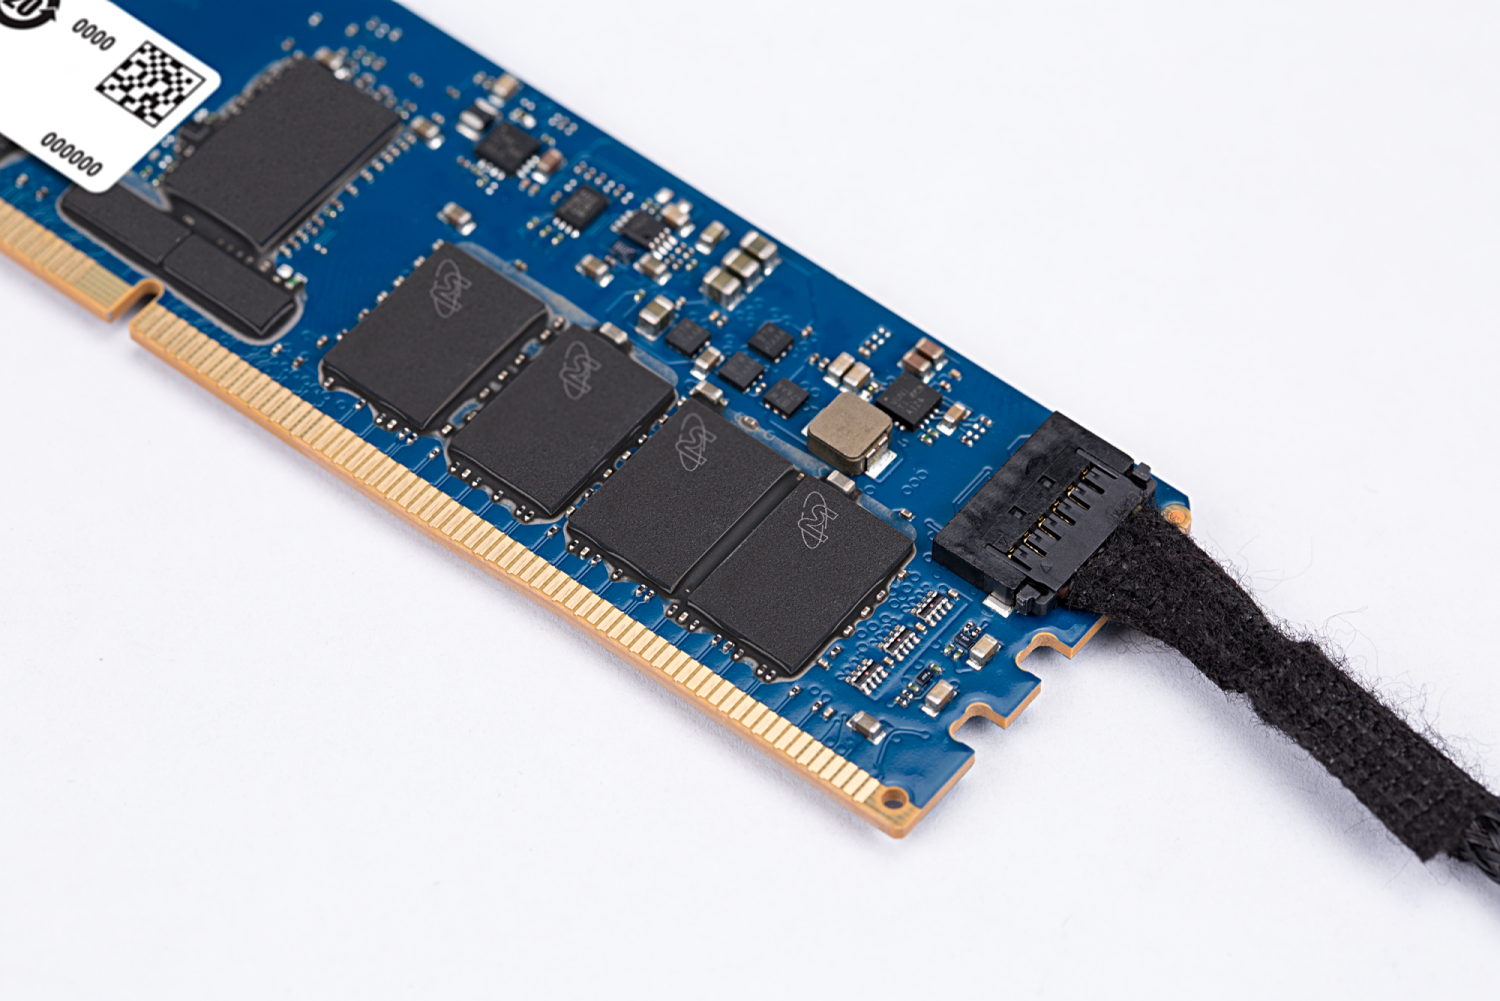 拓展伺服器記憶體產品組合 Crucial 首推 32GB NVDIMM 系列